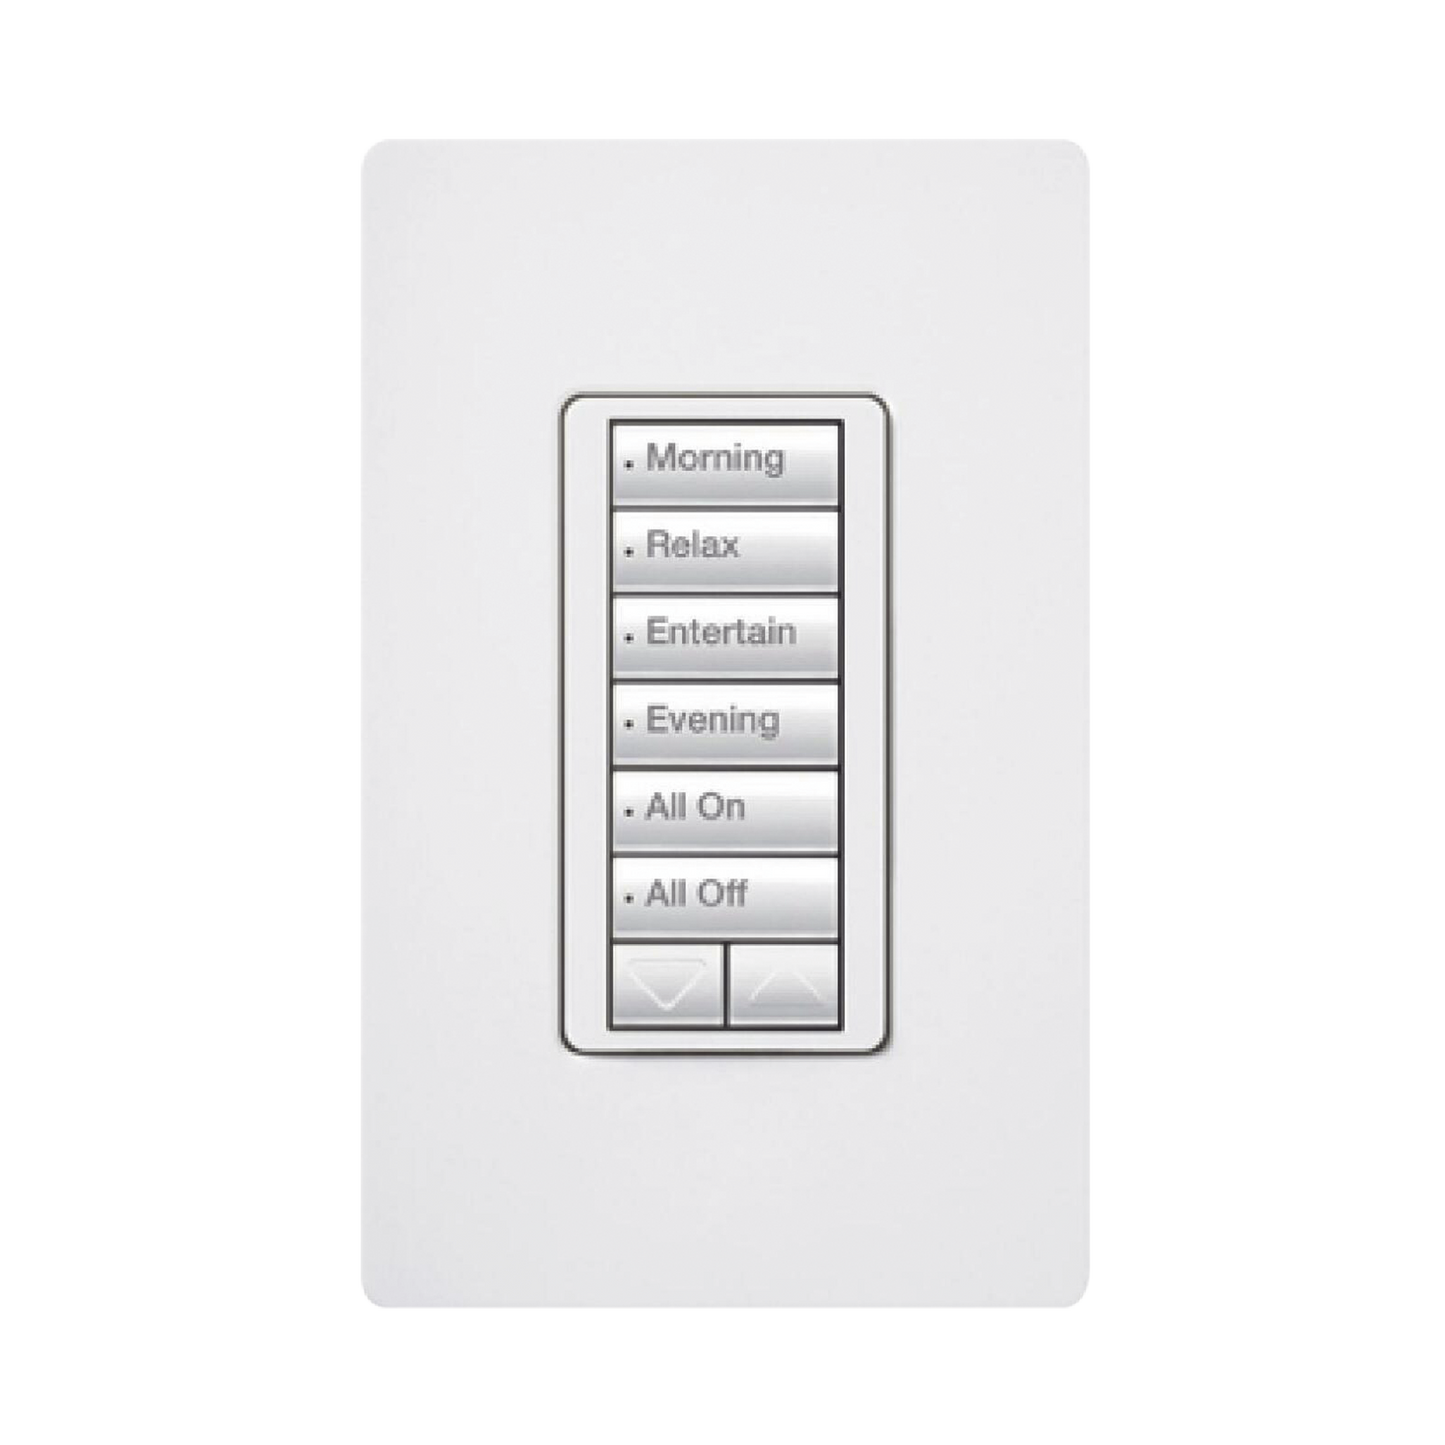 (RadioRA2) Teclado Seetouch Hibrido 6 botones, 2 botones subir/bajar, programe escenas diferentes en cada botÃ³n,puede instalarse en un interruptor de luz.